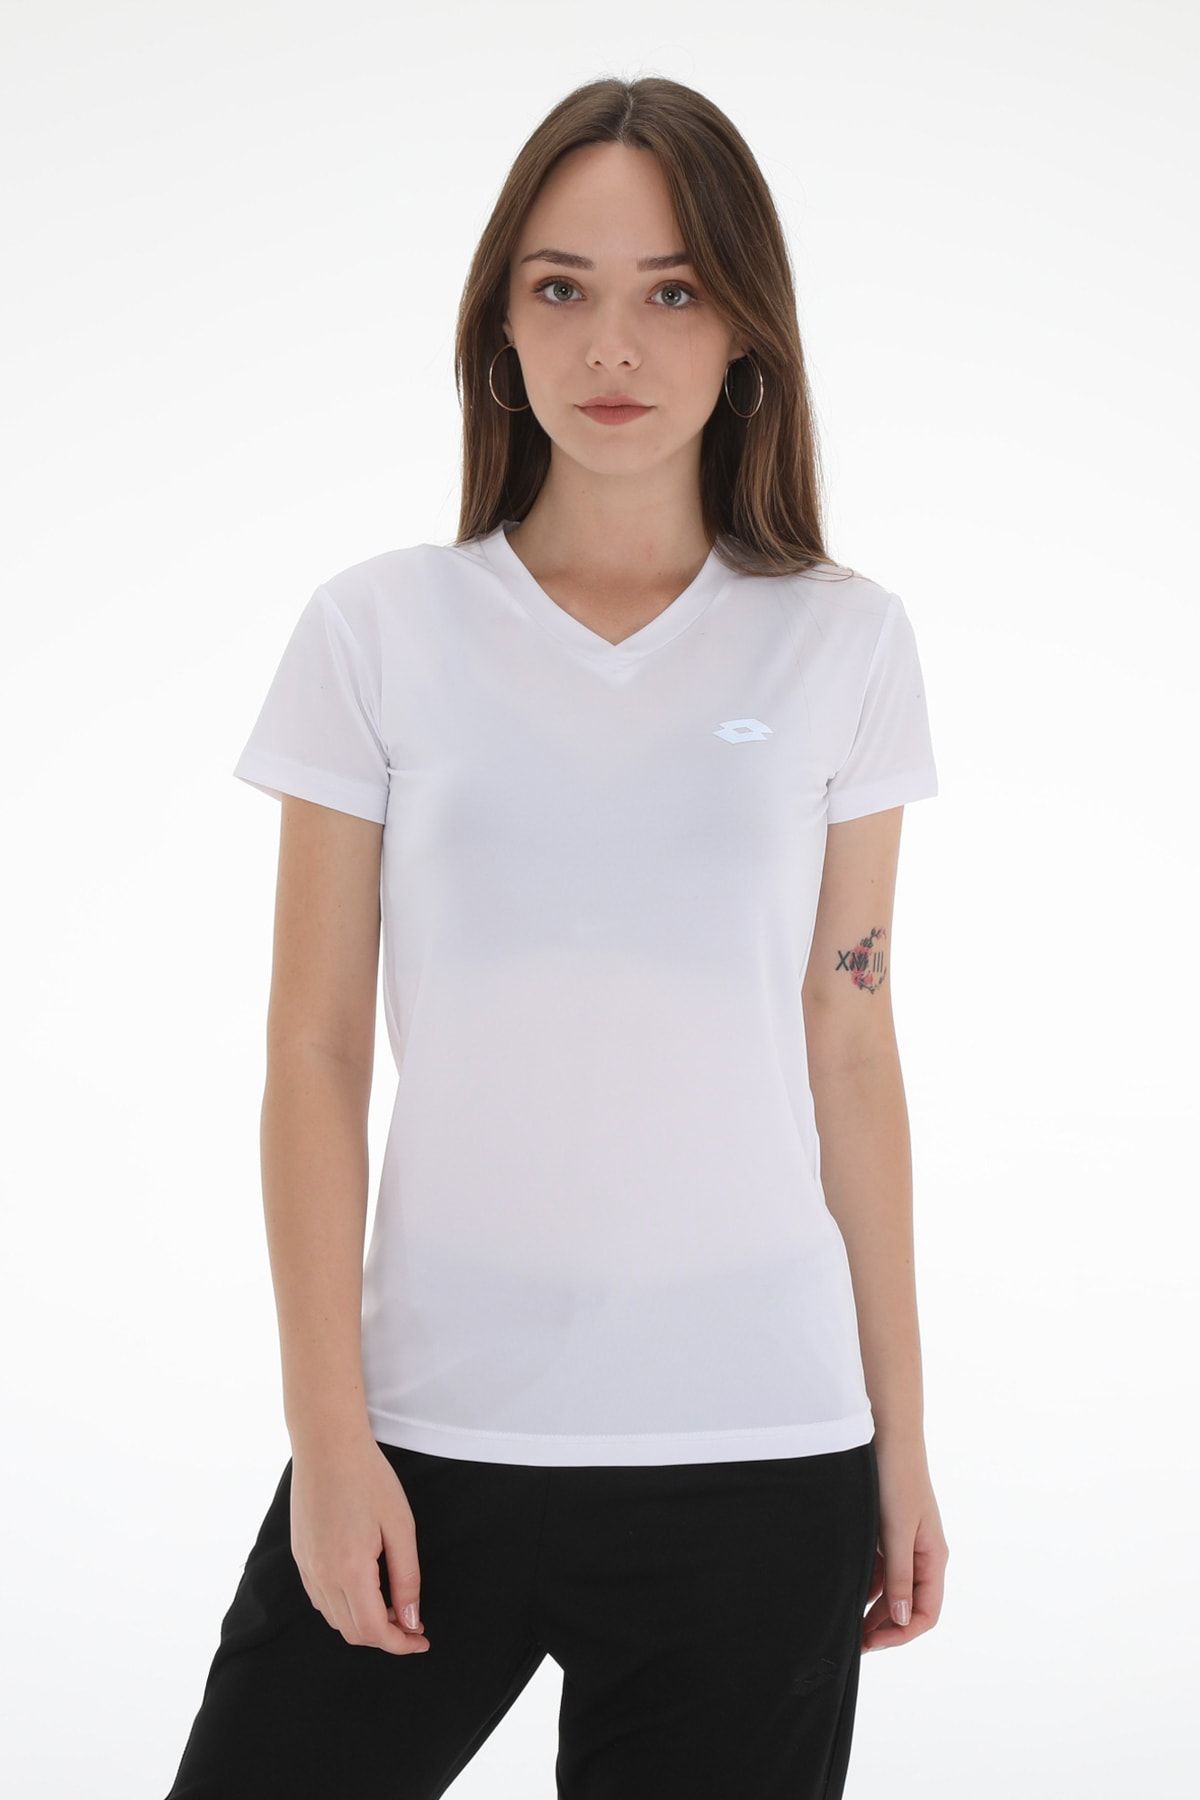 Lotto T-shirt Kadın / Kız Buff Tee Pl Vn W R6878 Beyaz/gümüş